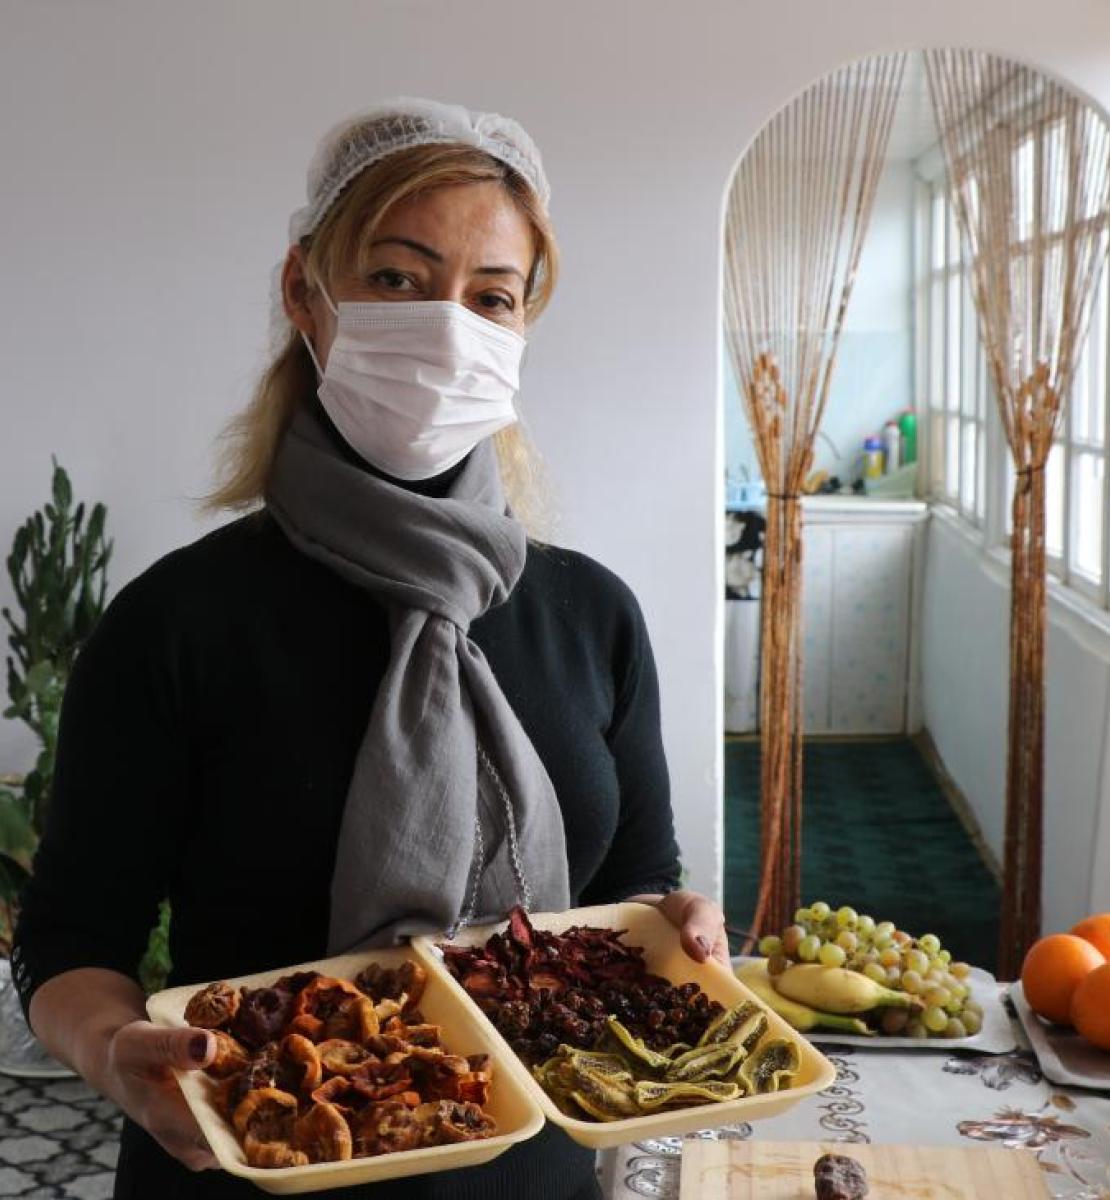 一名戴着白色面罩的妇女展示了一个装满干果的外卖食品容器。